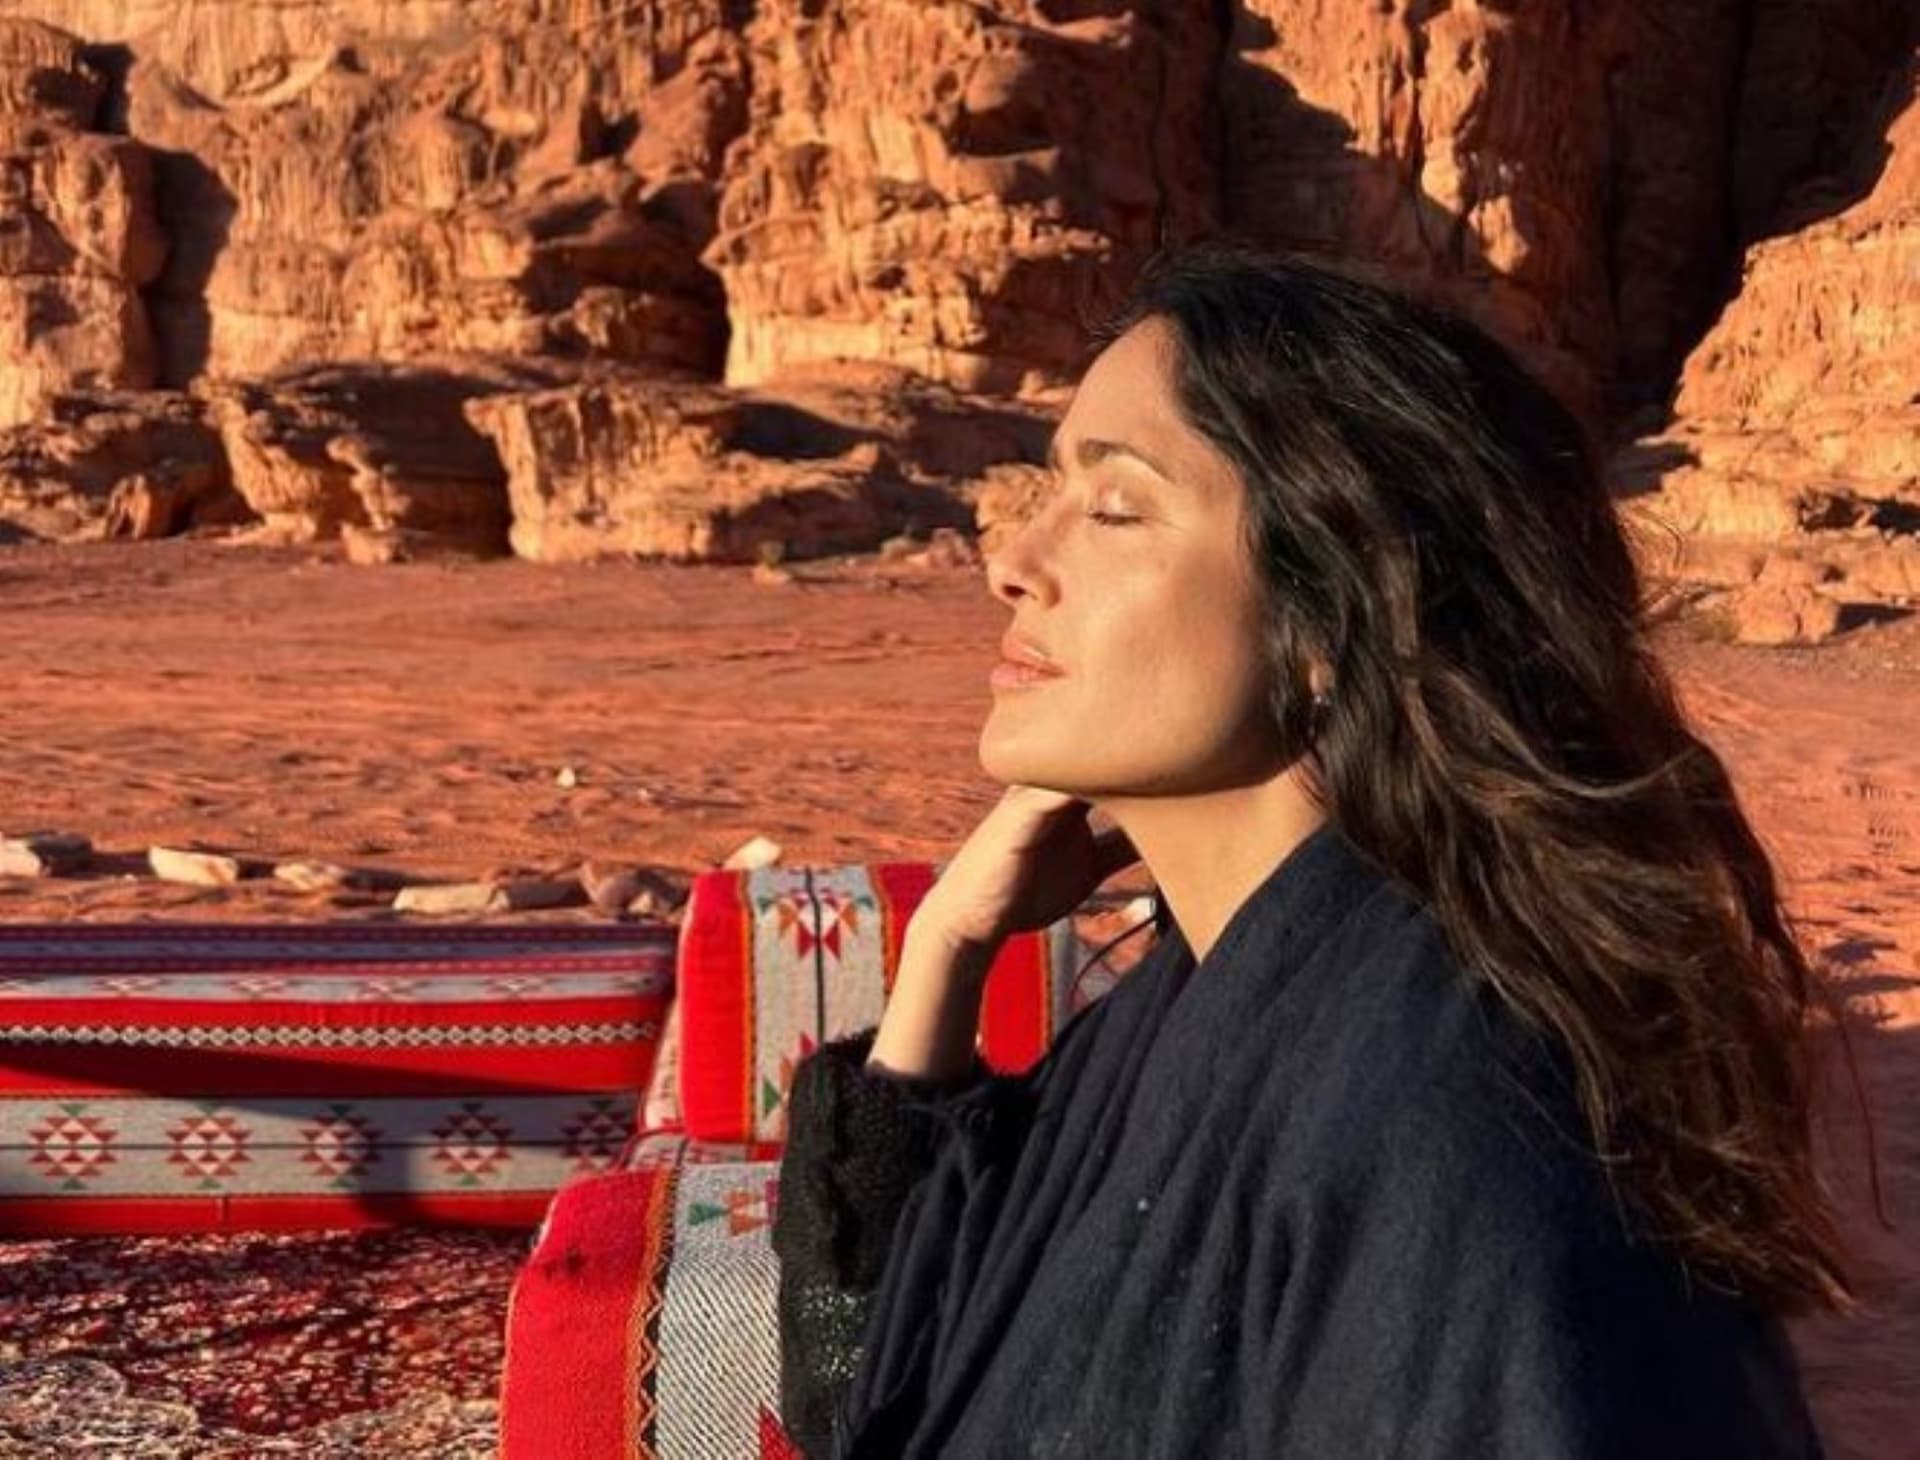 سلمى حايك تنشر صورا لها في وادي رم: "استنشاق سحر الأردن"